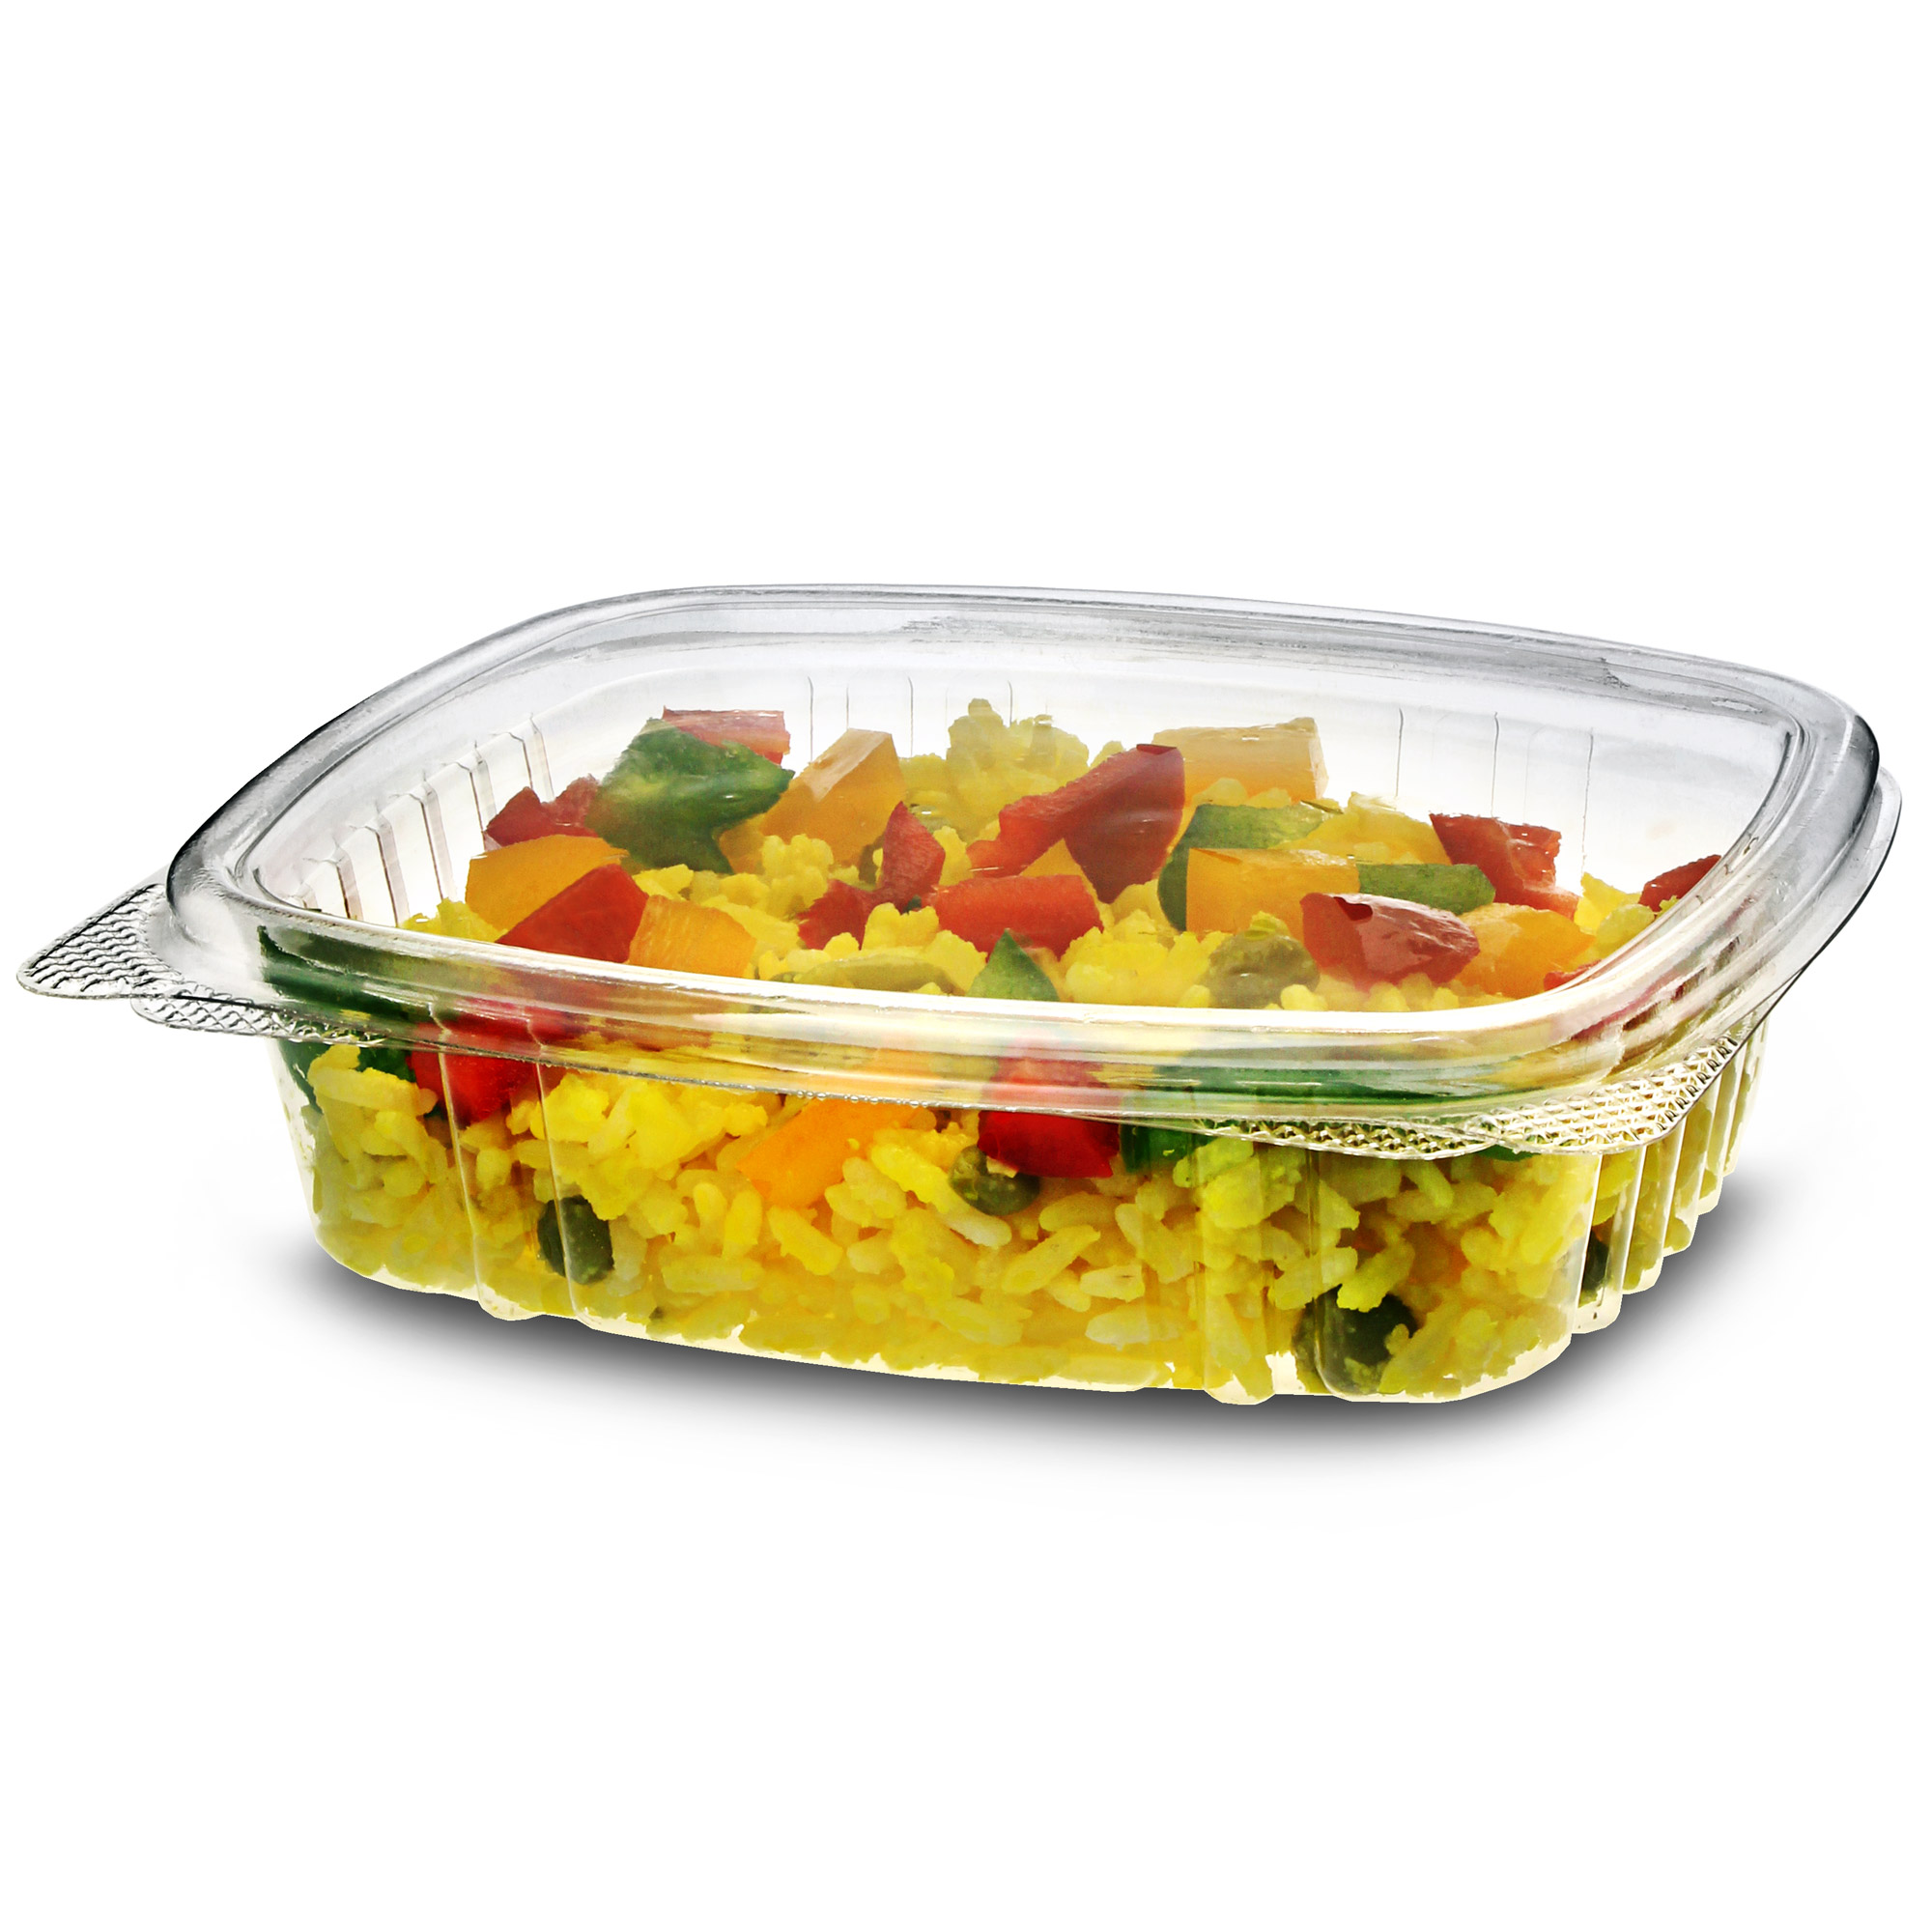 Овощи в стеклянной посуде. Салат в стеклянной посуде. Салат в контейнере. Одноразовая посуда для салатов. Салат в пластиковом контейнере.